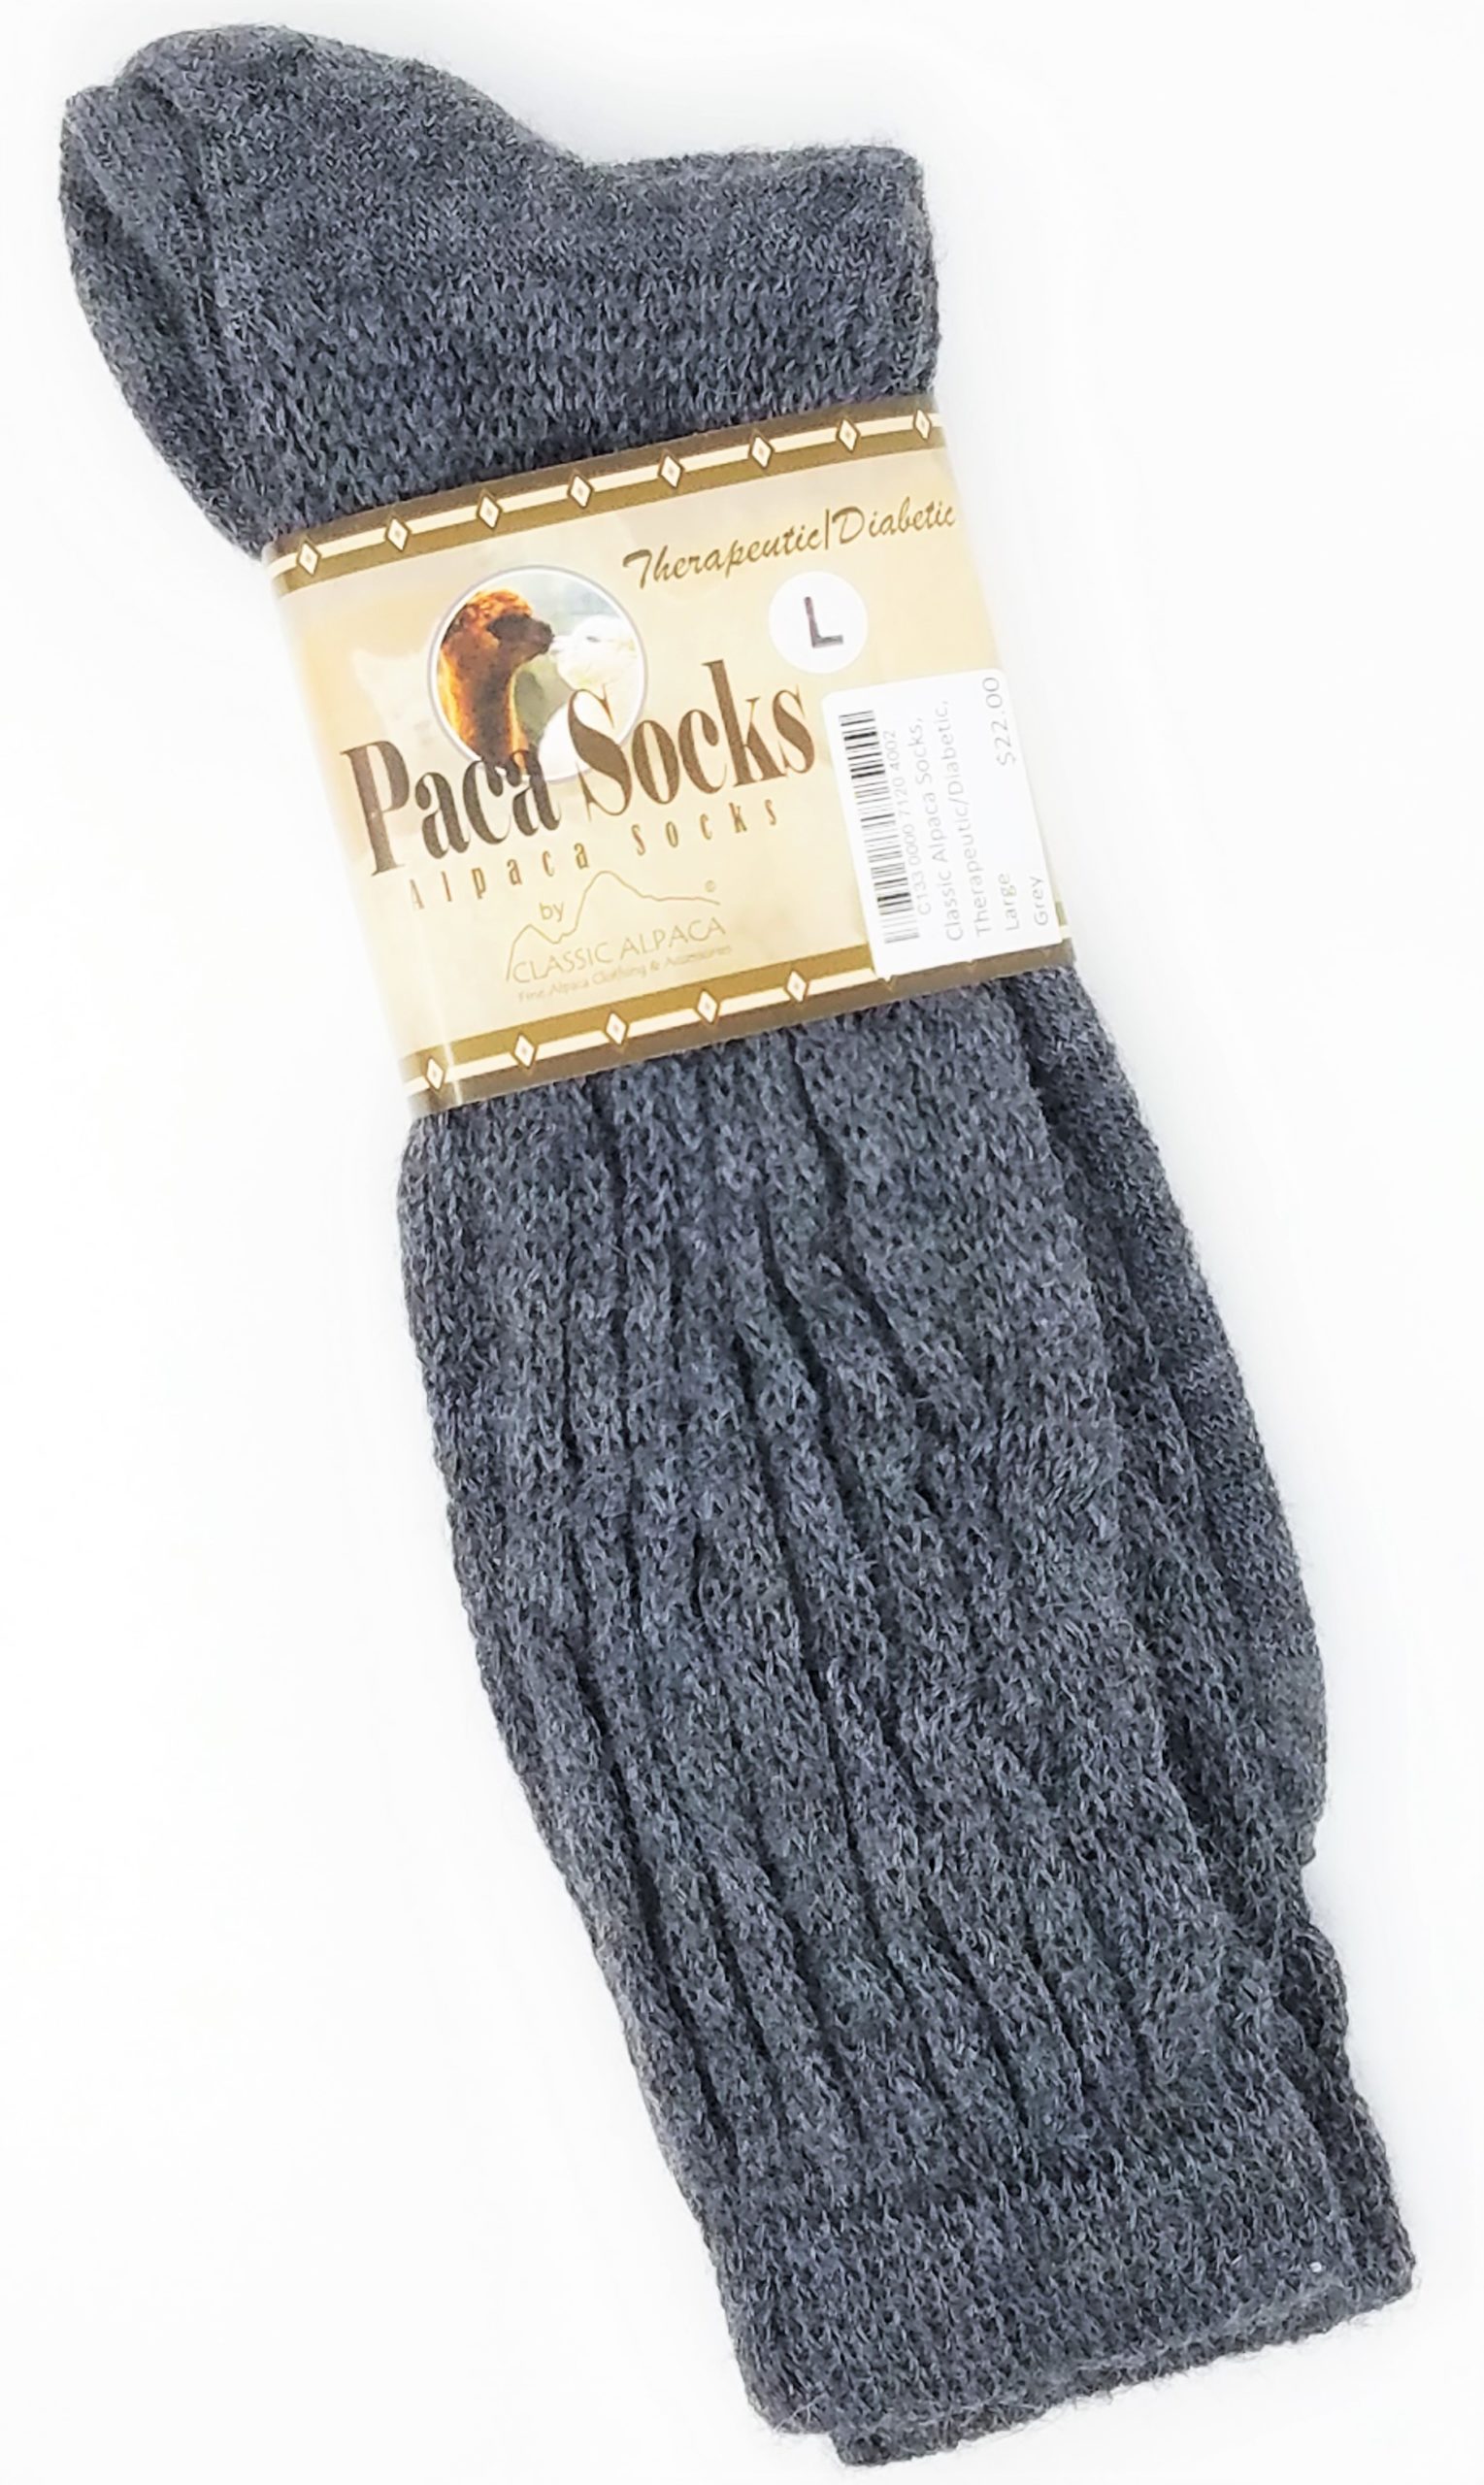 Classic Alpaca Paca Socks, Therapeutic Unisex